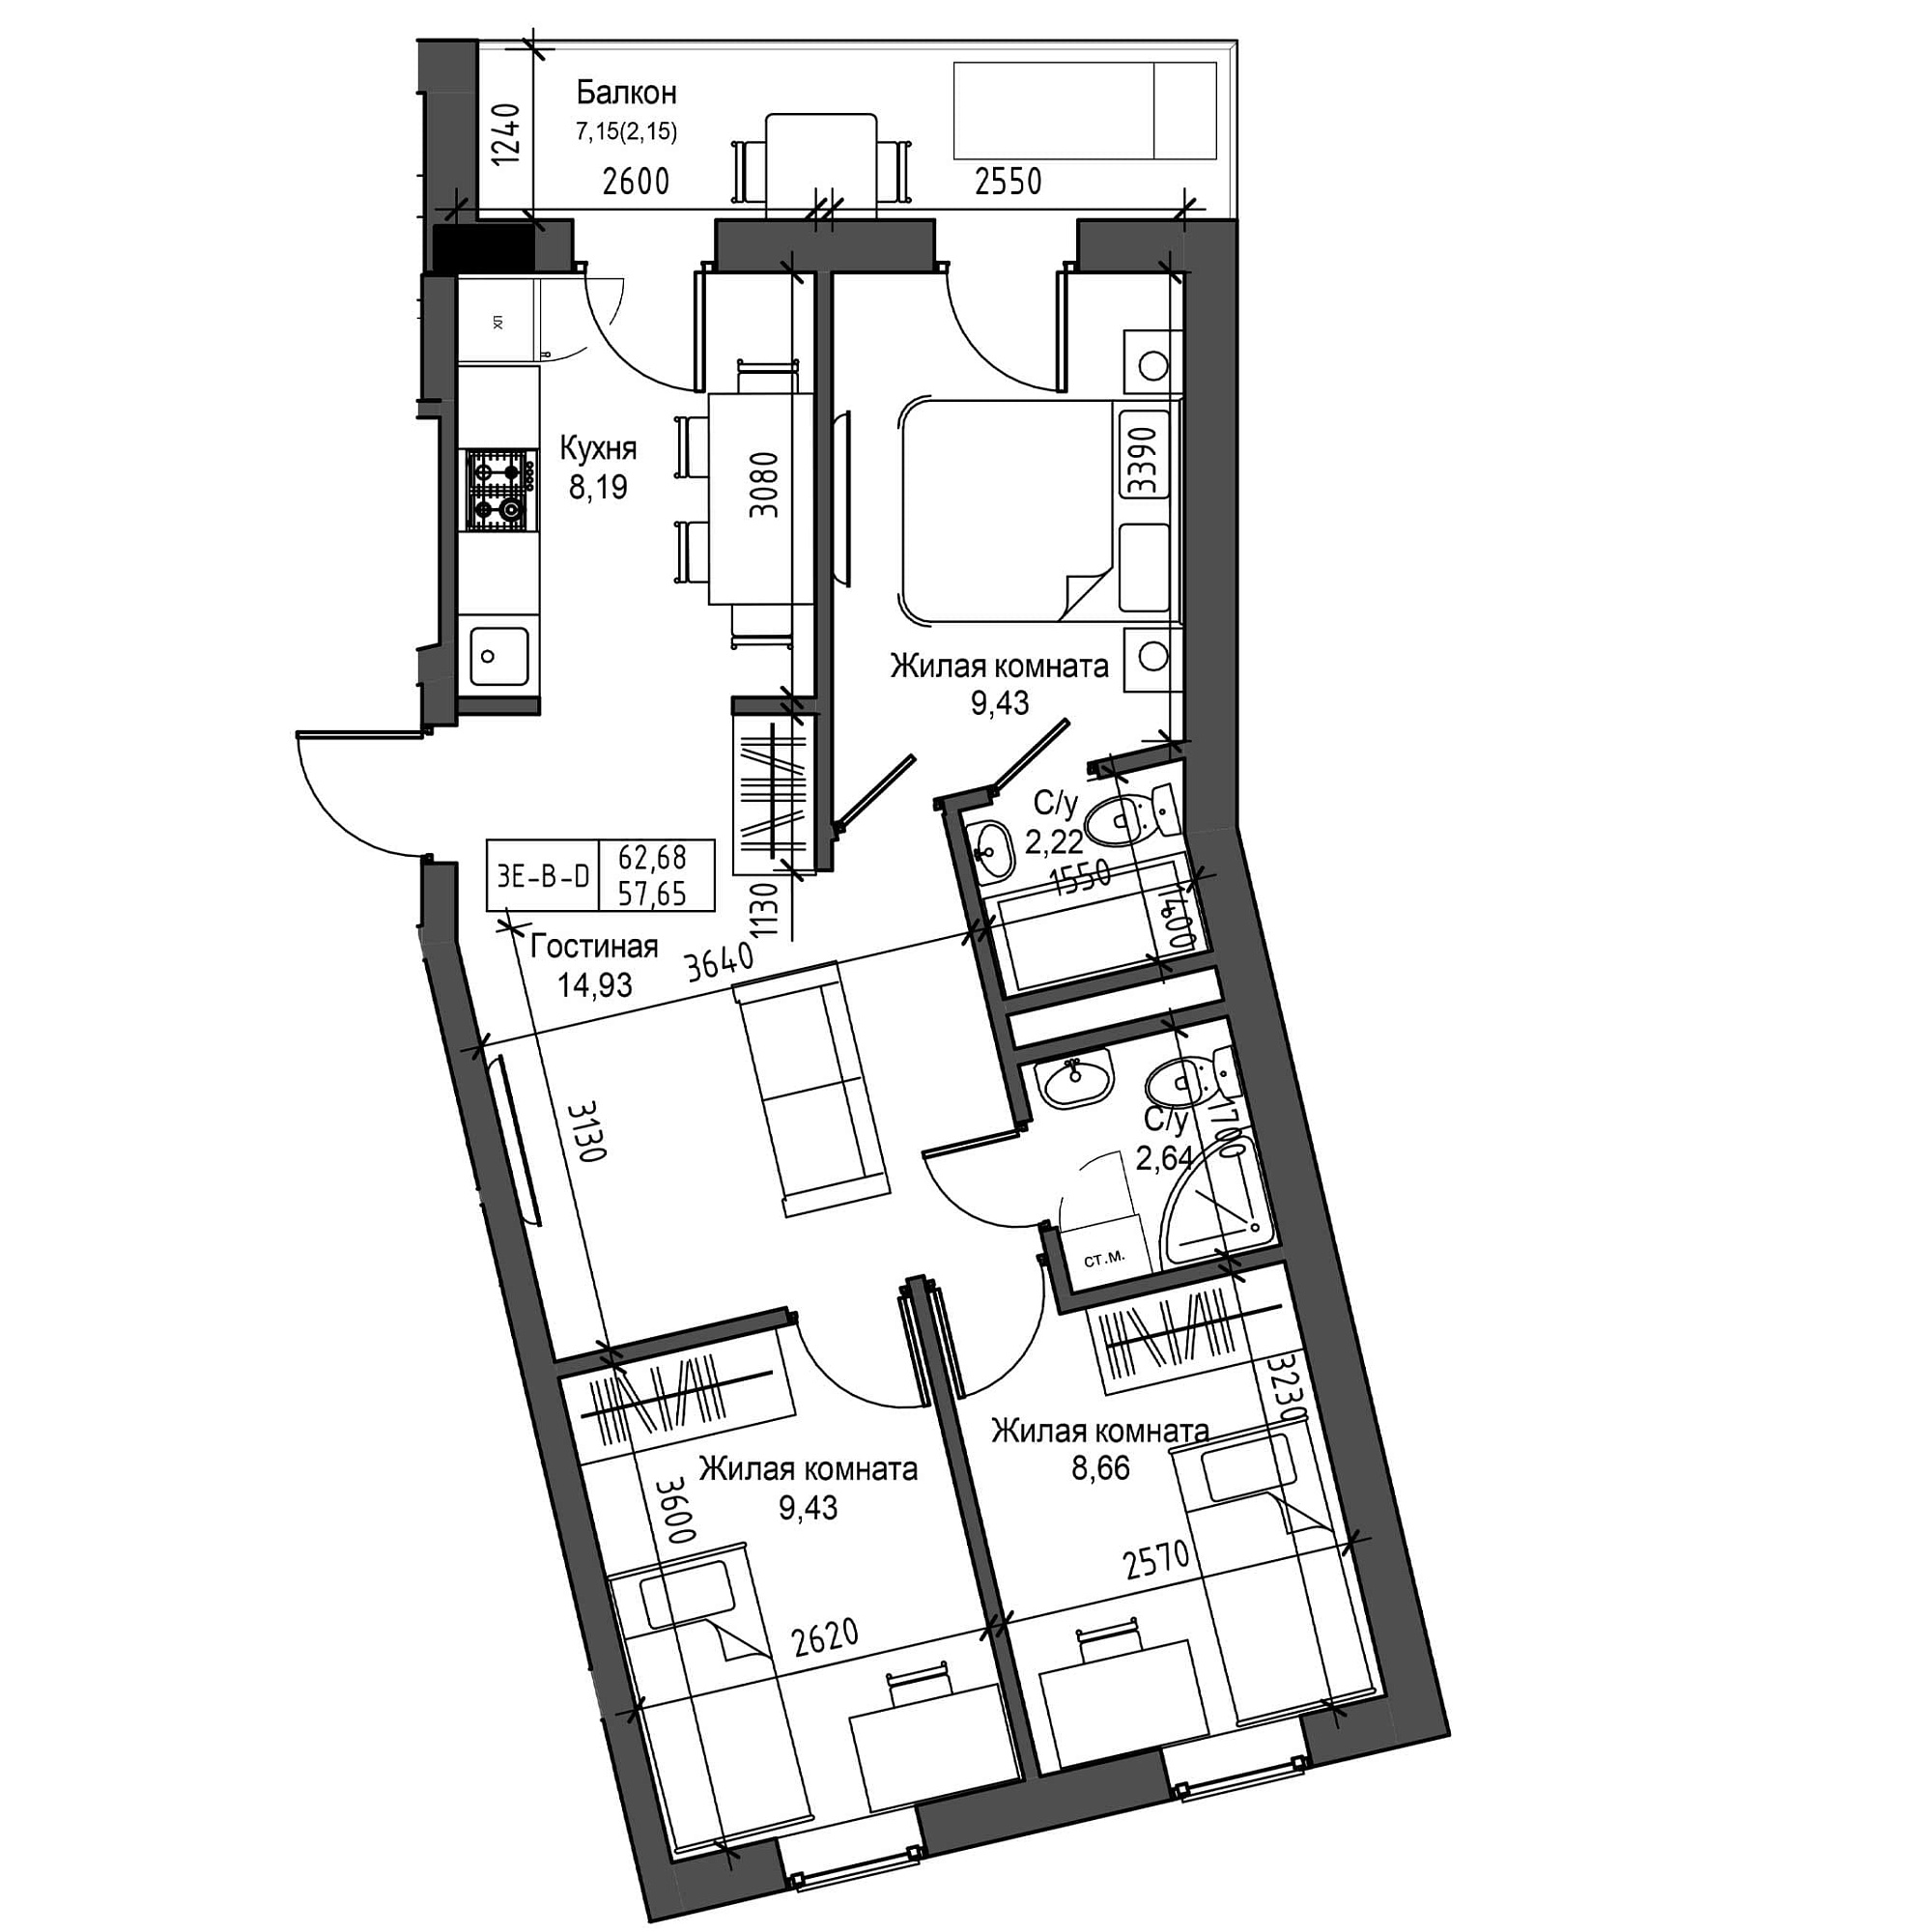 Планировка 3-к квартира площей 57.65м2, UM-001-04/0006.